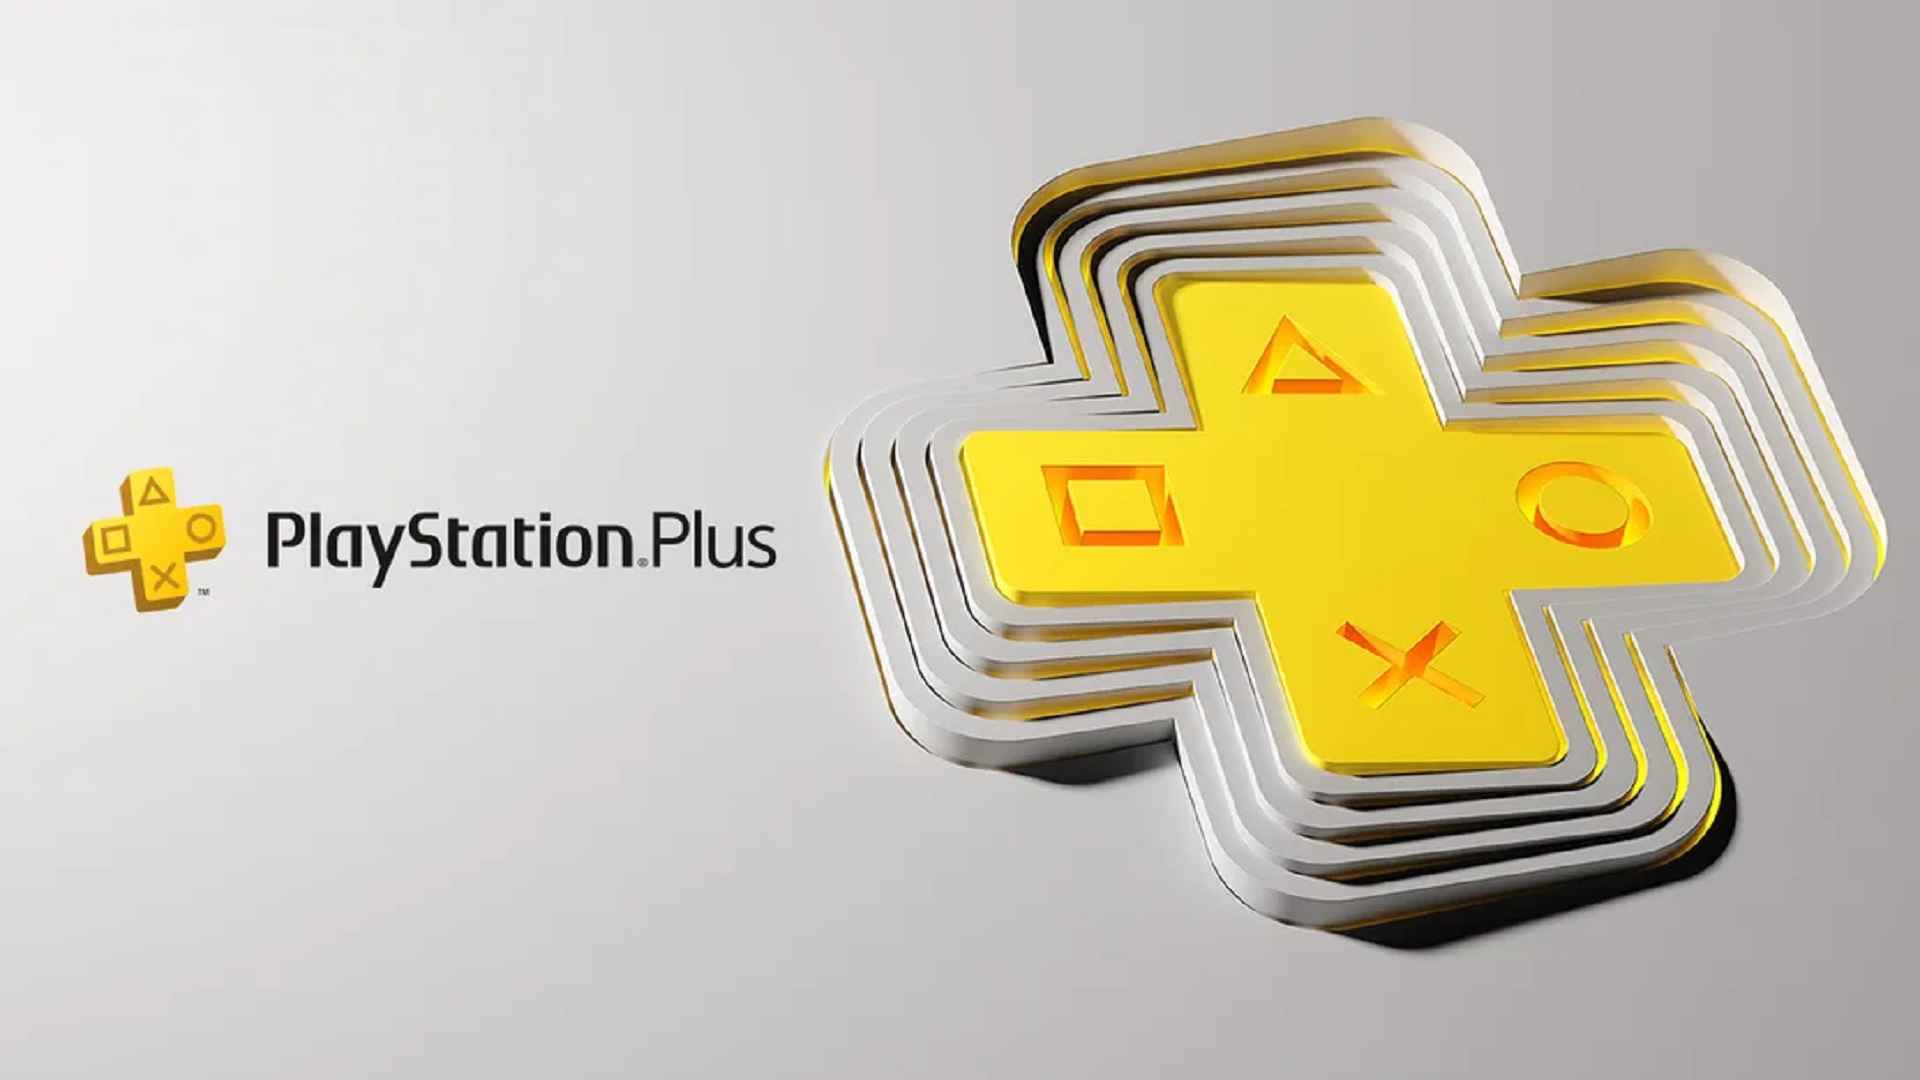 La renovación de PlayStation Plus de Sony incluye los niveles "Extra" y "Premium